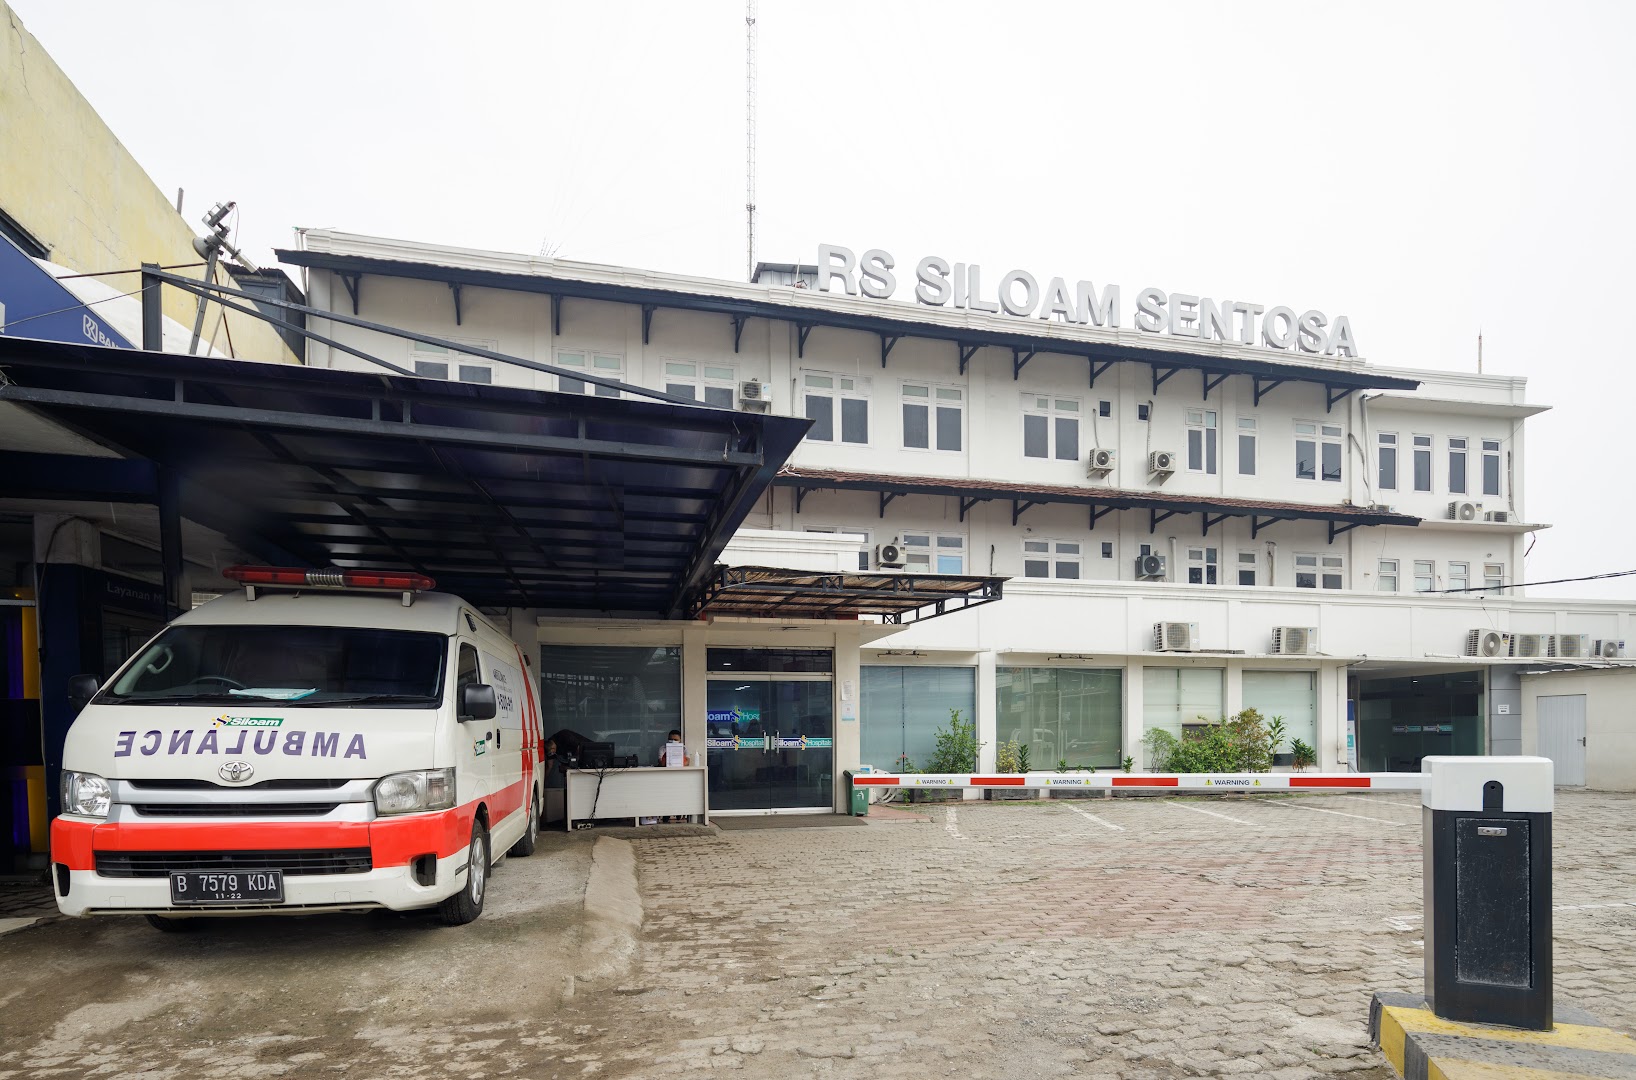 Rumah Sakit Siloam Sentosa Photo